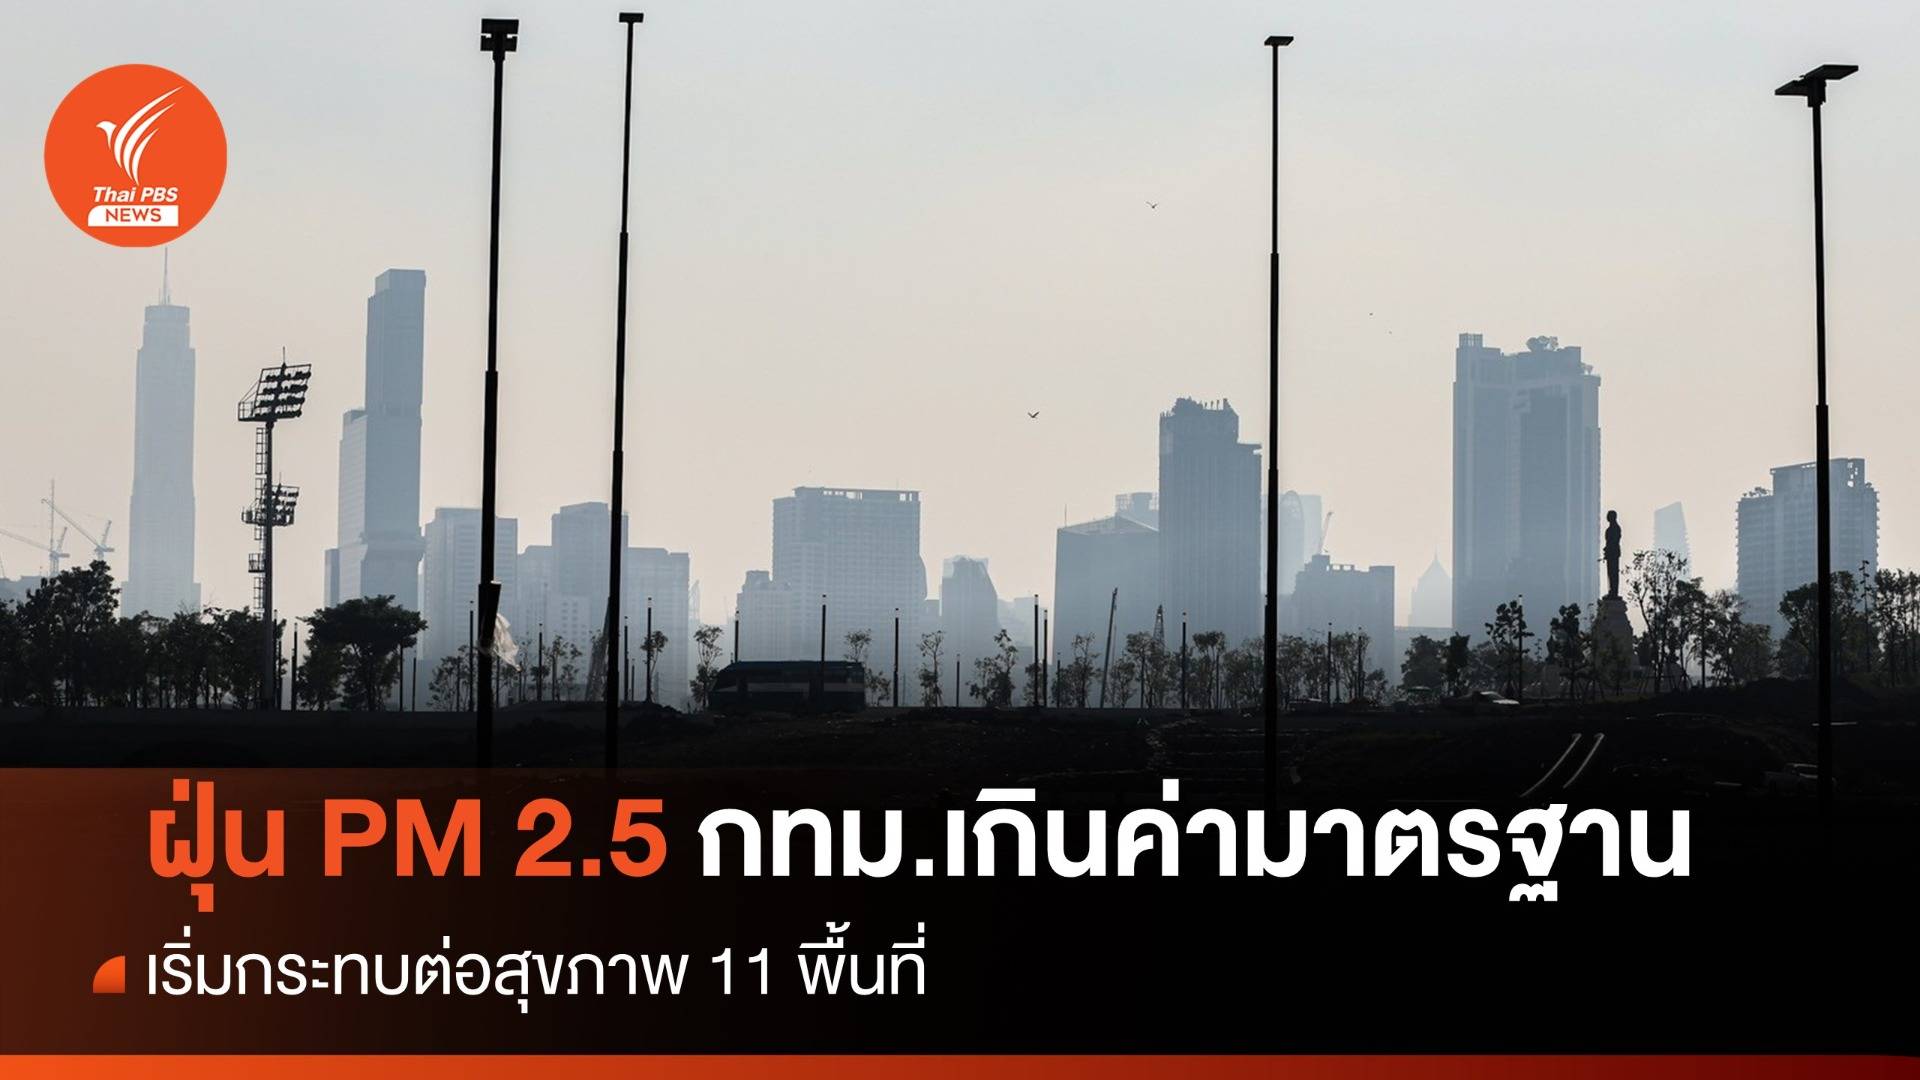 ฝุ่น PM 2.5 กทม.เกินค่ามาตรฐาน เริ่มกระทบสุขภาพ 11 พื้นที่